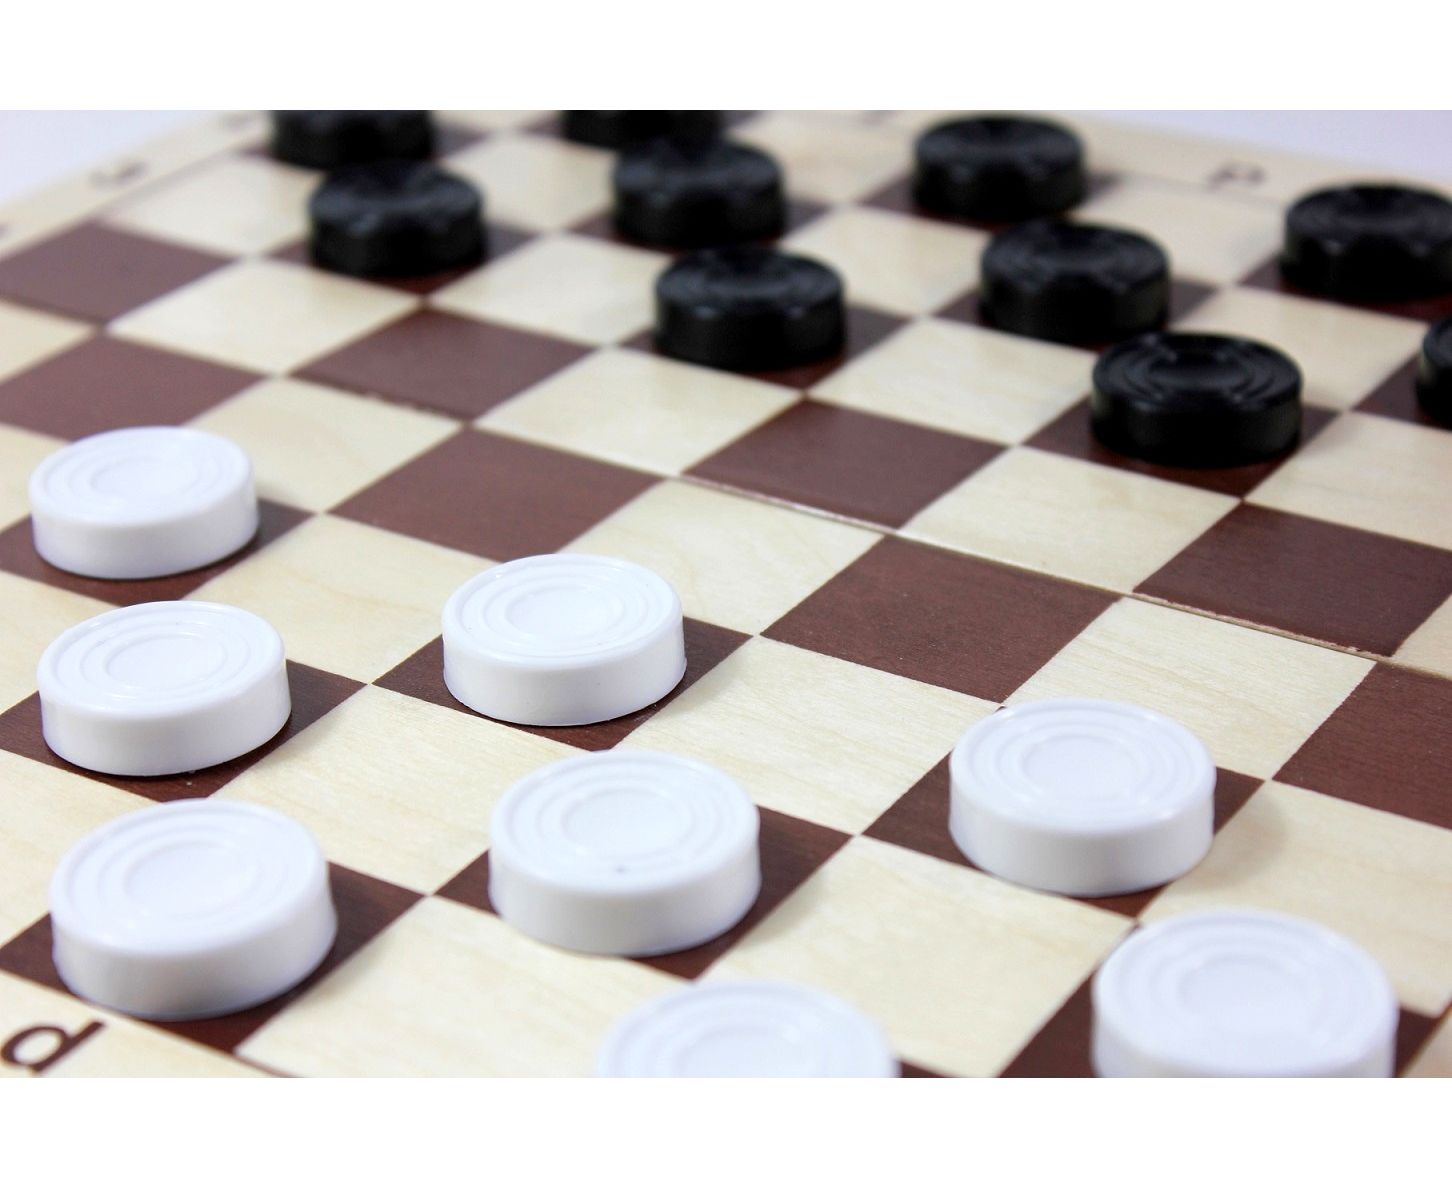 Игры шашки и другие. Шашки шахматы Десятое королевство. Настольная игра Десятое королевство 03879 шахматы и шашки (поле 29х29 см). Шашки деревянные Десятое королевство. Шашки (в пласт. Коробке).